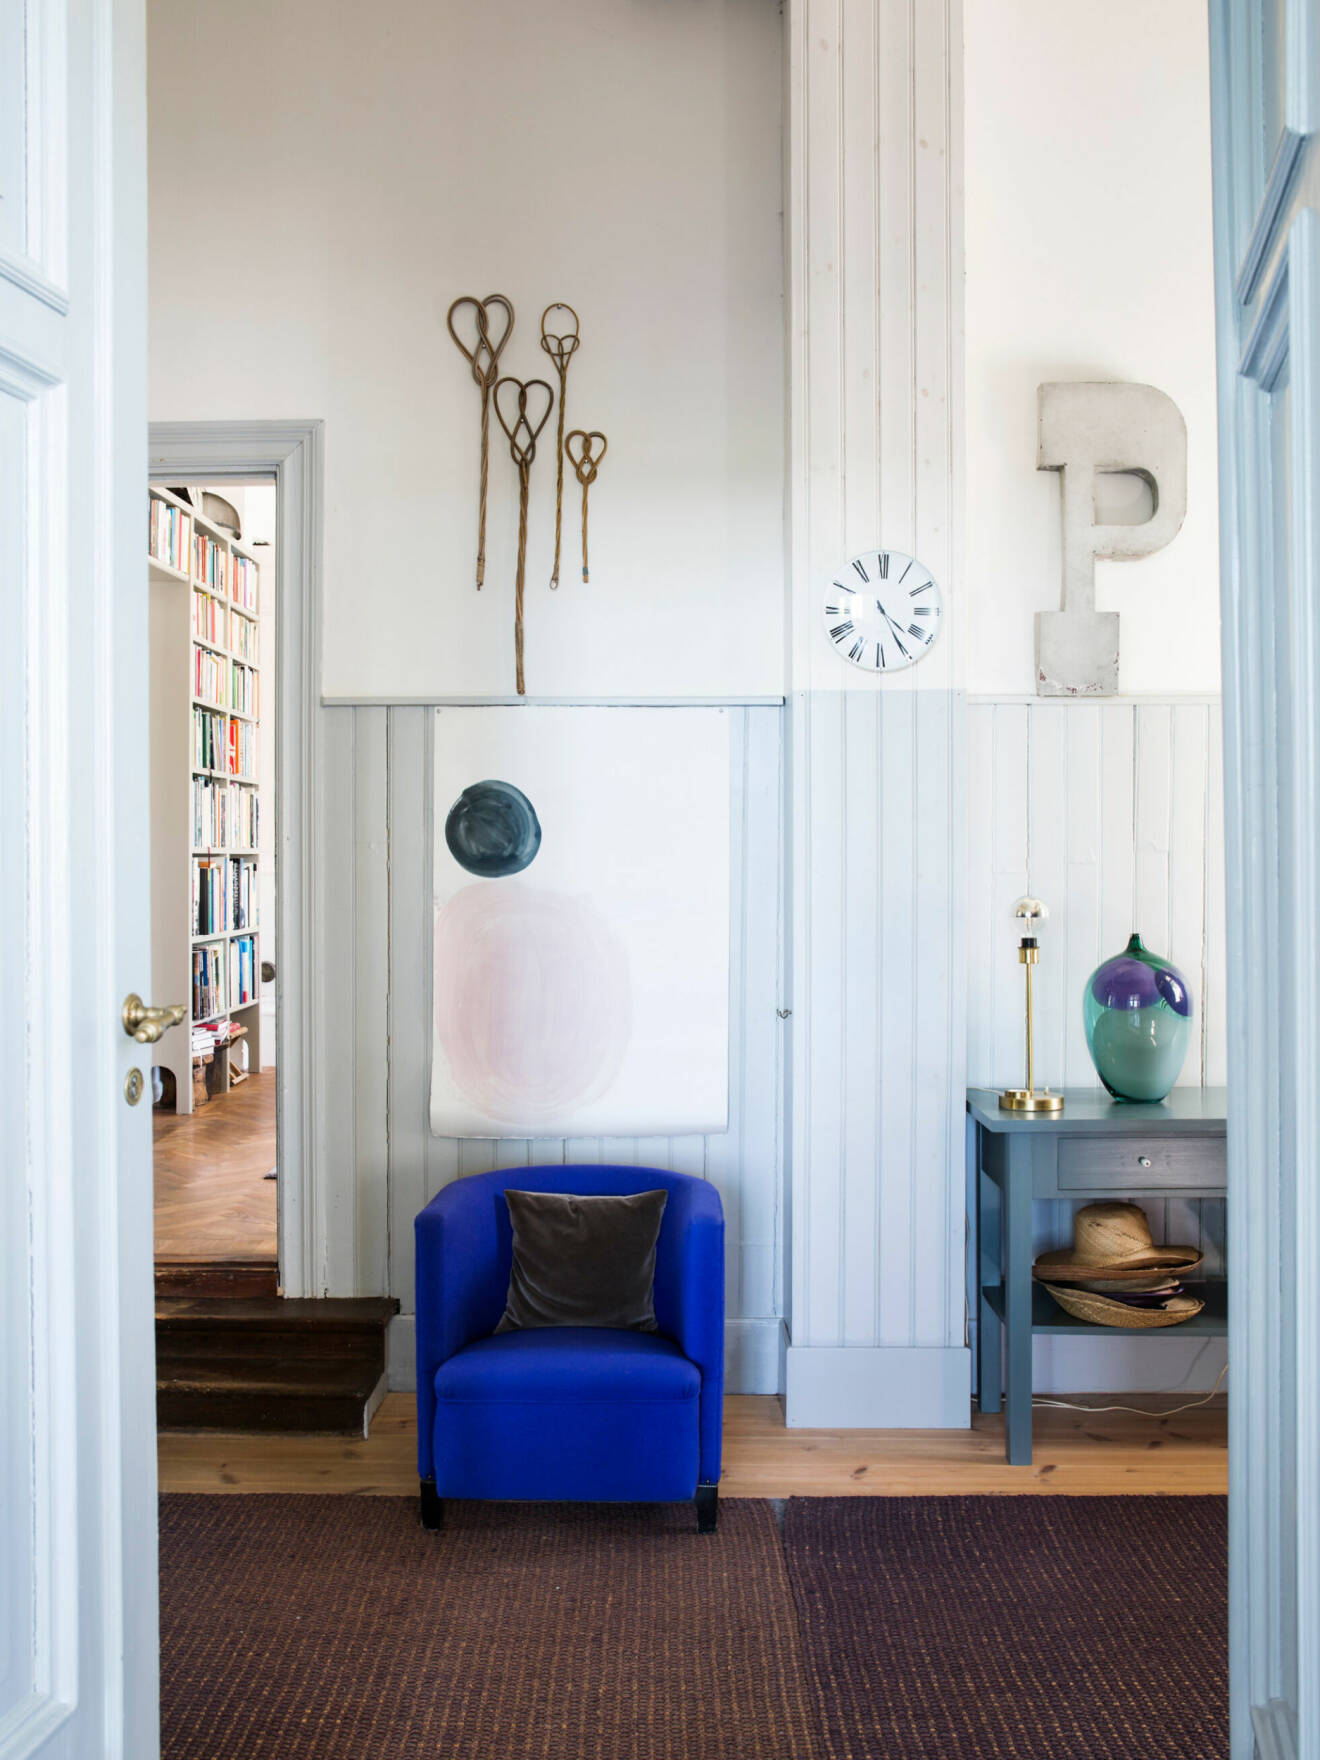 Koboltblå fåtölj, unika inredningsdetaljer och ljusa kulörer hemma hos glaskonstnären Gunnel Sahlin